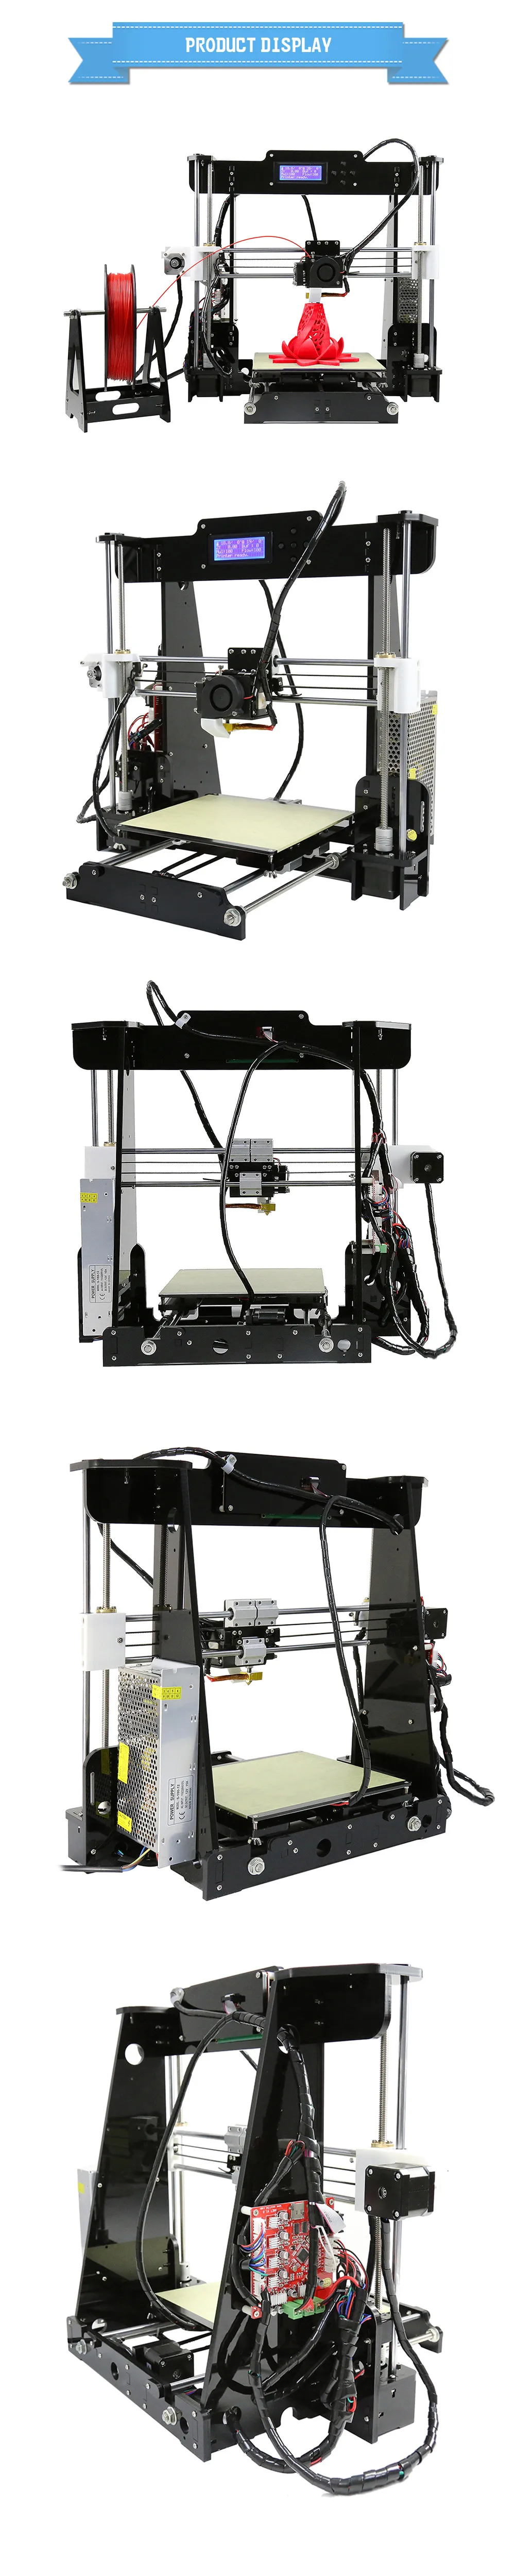 Anet A6 A8 A2 3d принтер хорошая адгезия платформы за рубежом склад открытый источник быстрая сборка рабочего стола FDM 3d Принтер Комплект